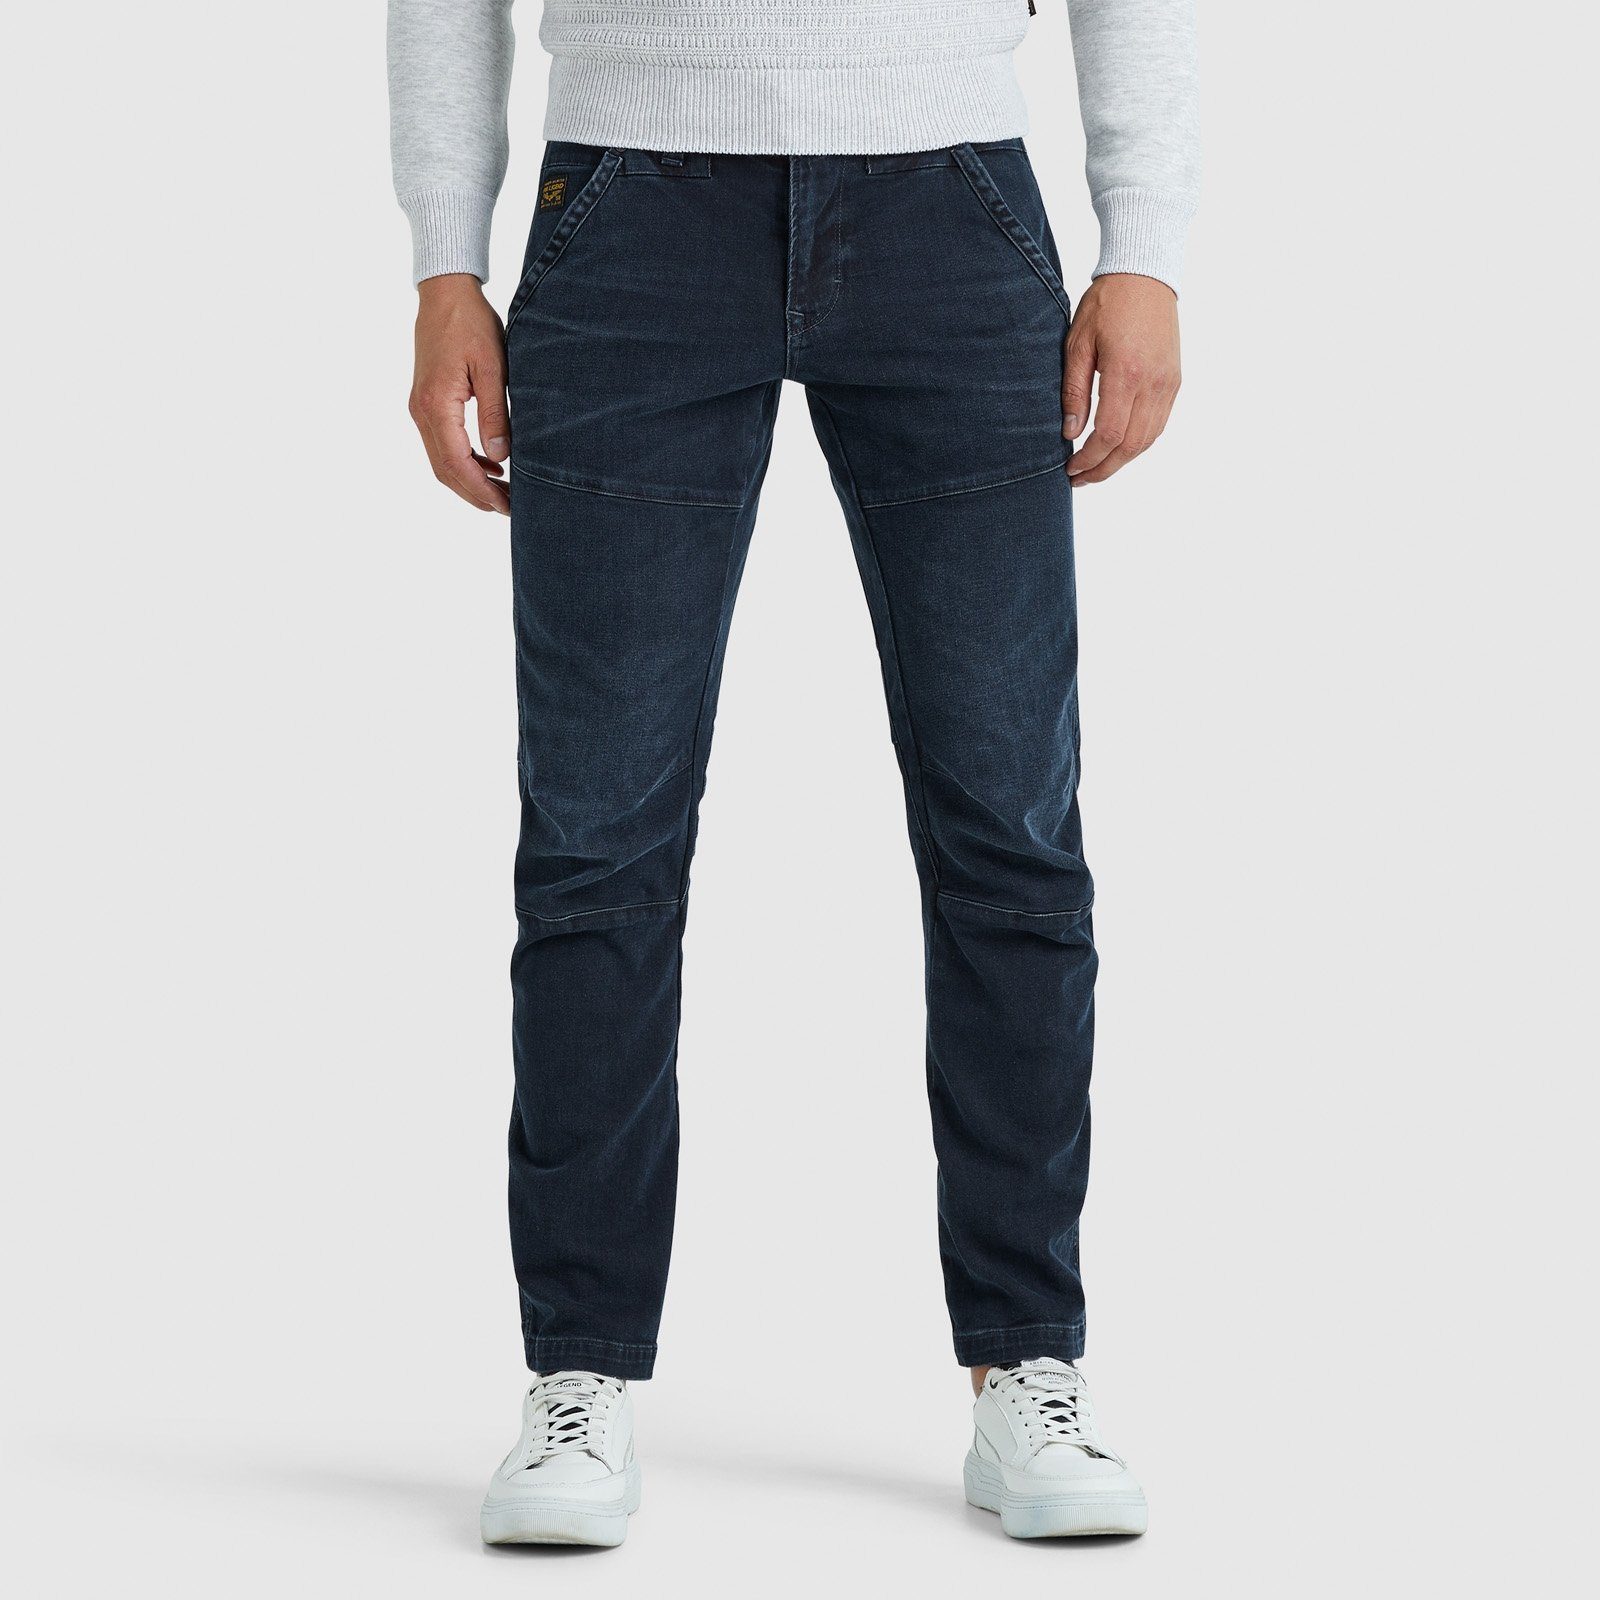 SKYLOCK DENIM PME 5-Pocket-Jeans LEGEND BLUE BLACK WORKER